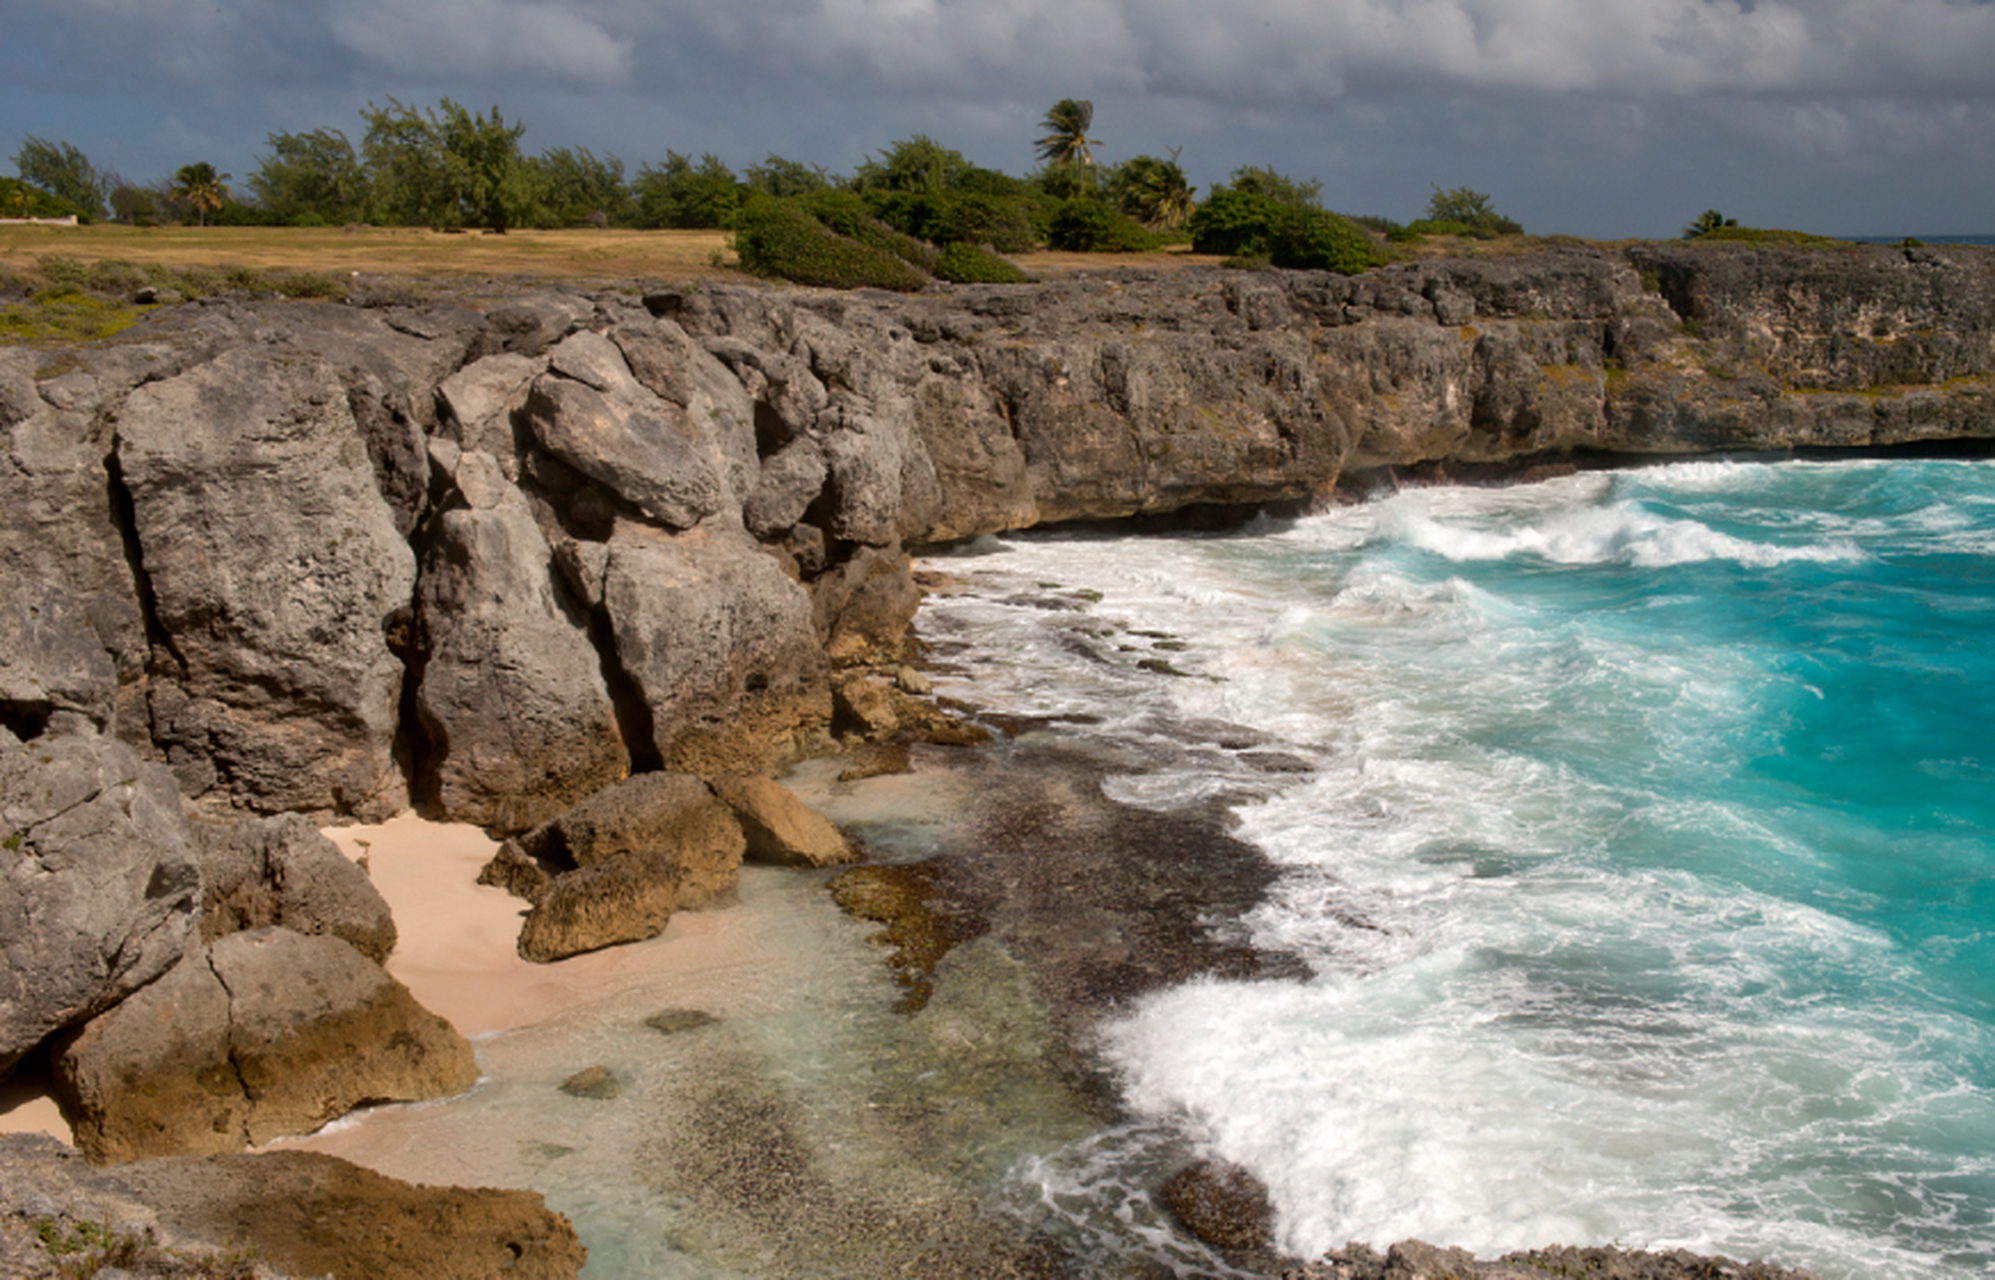 巴巴多斯岛 barbados 在西印度洋群岛的最东端,有一个风景秀丽的珊瑚